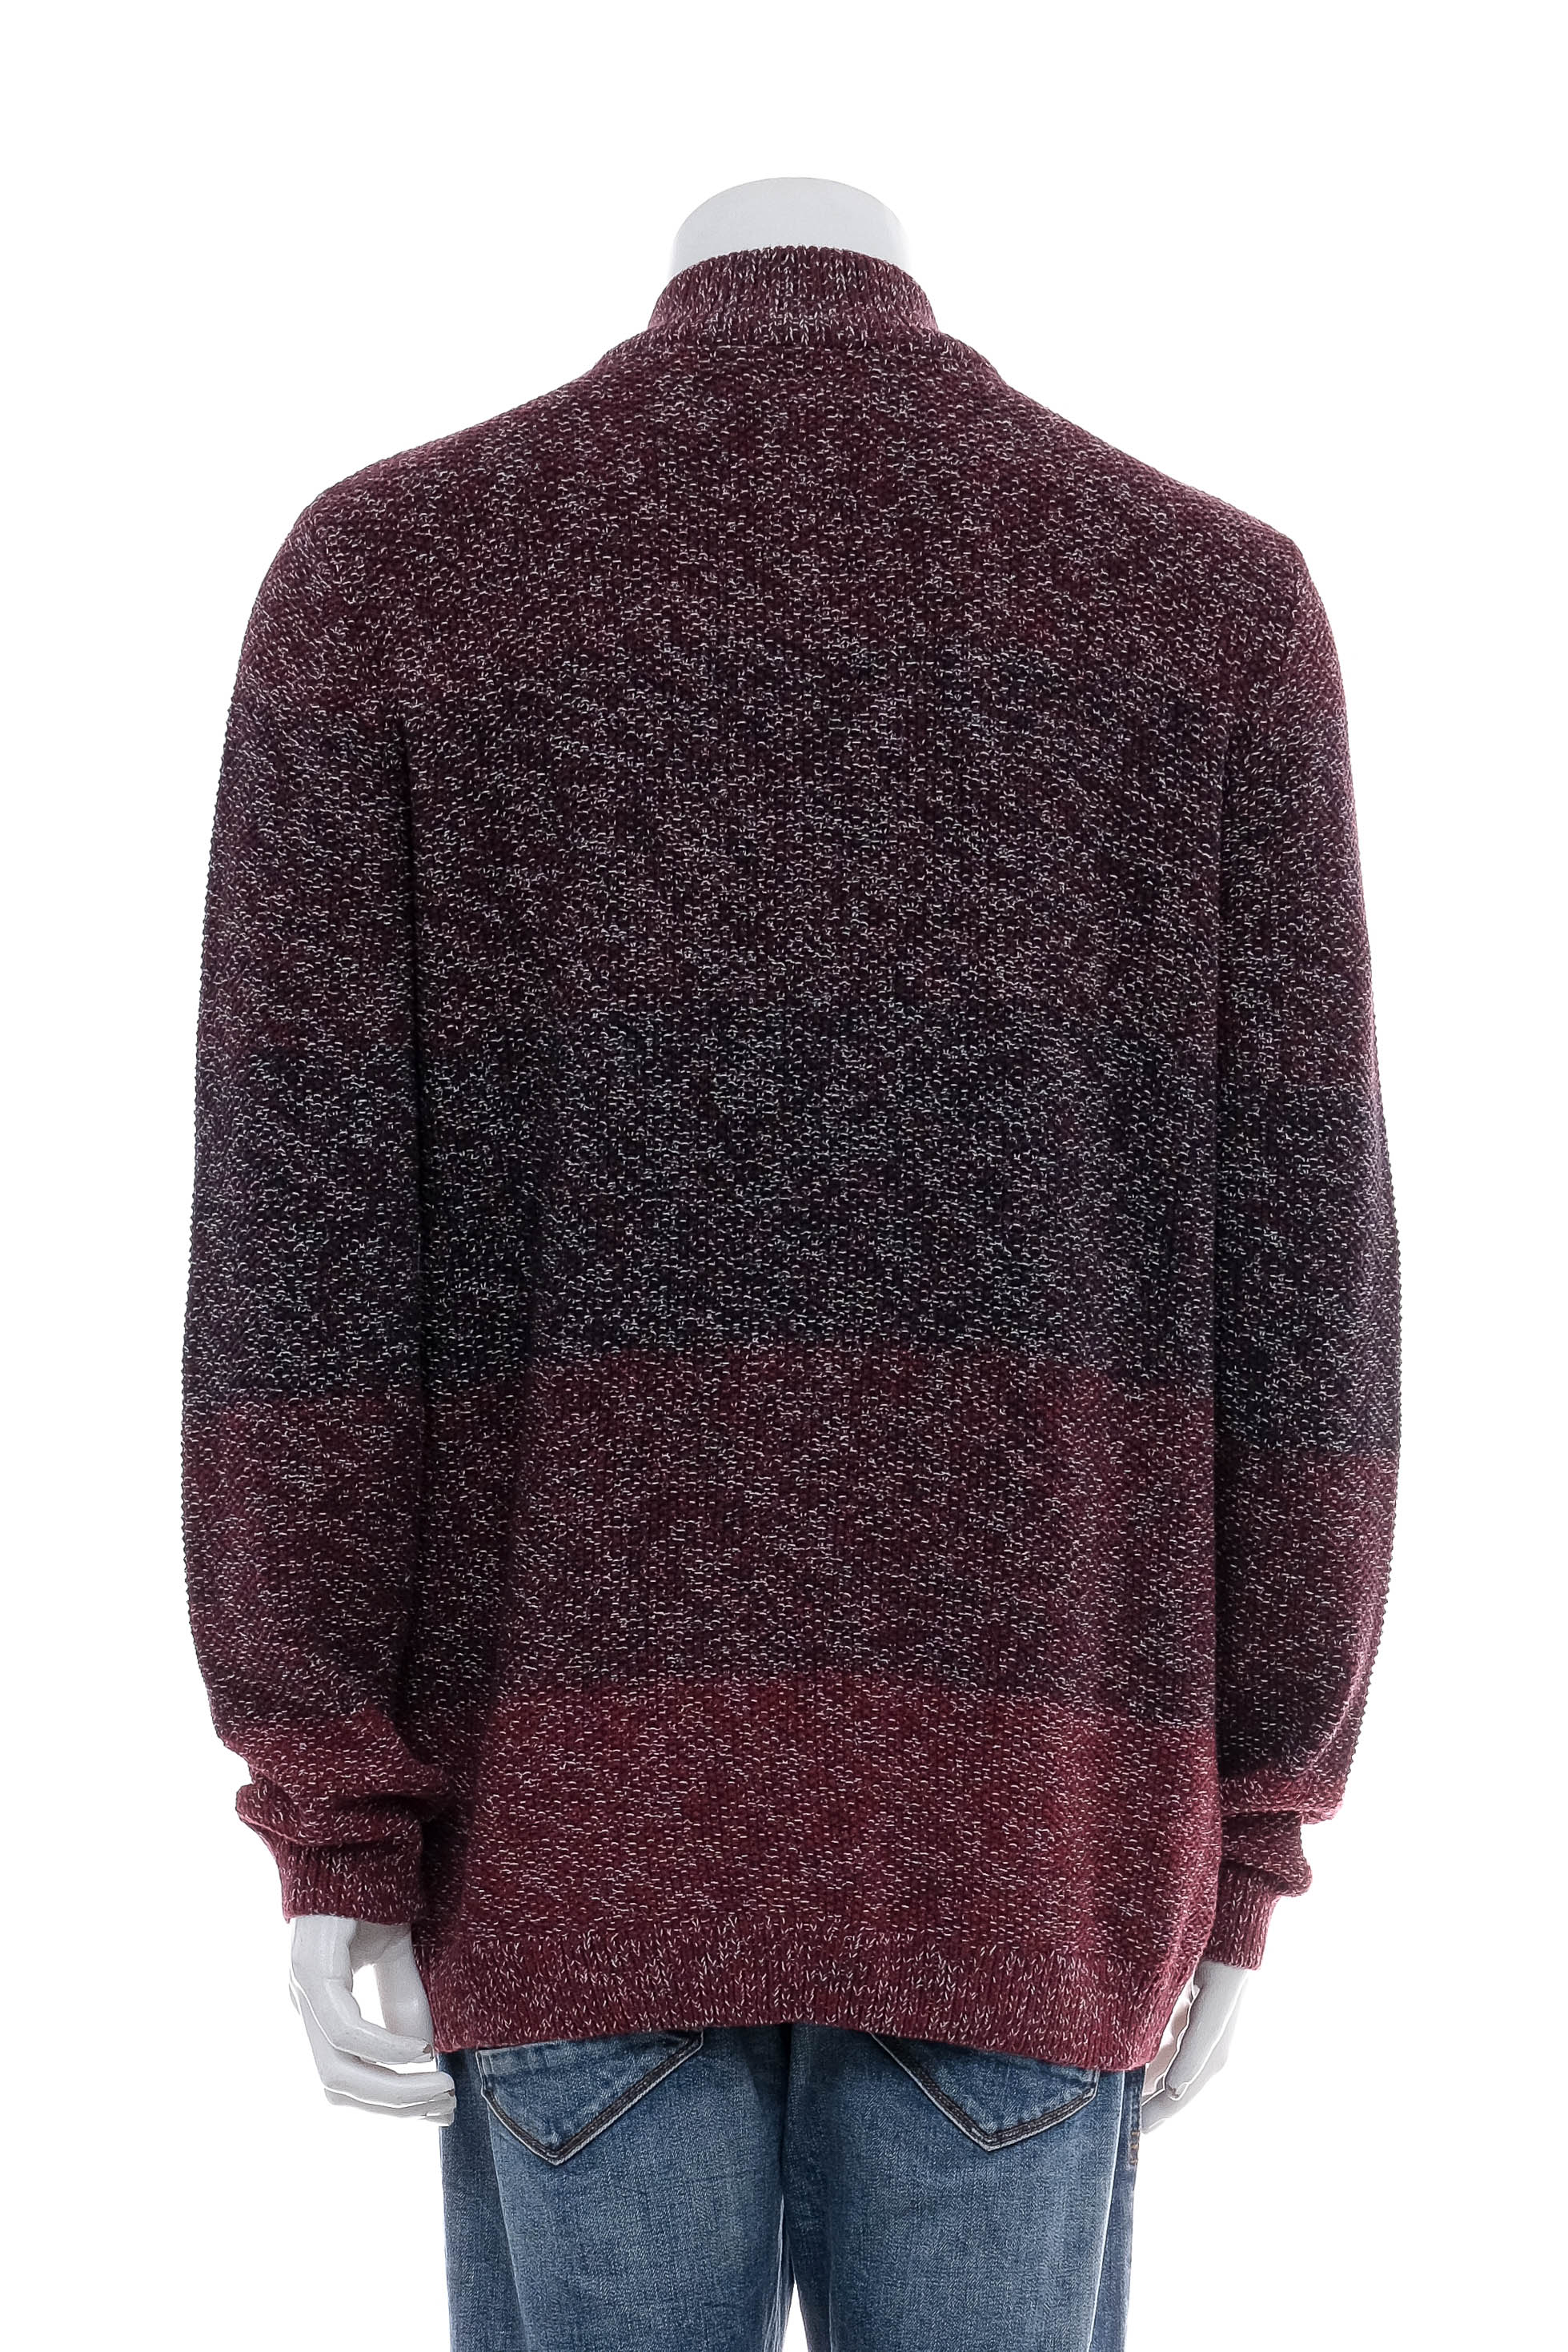 Men's sweater - Basefield - 1